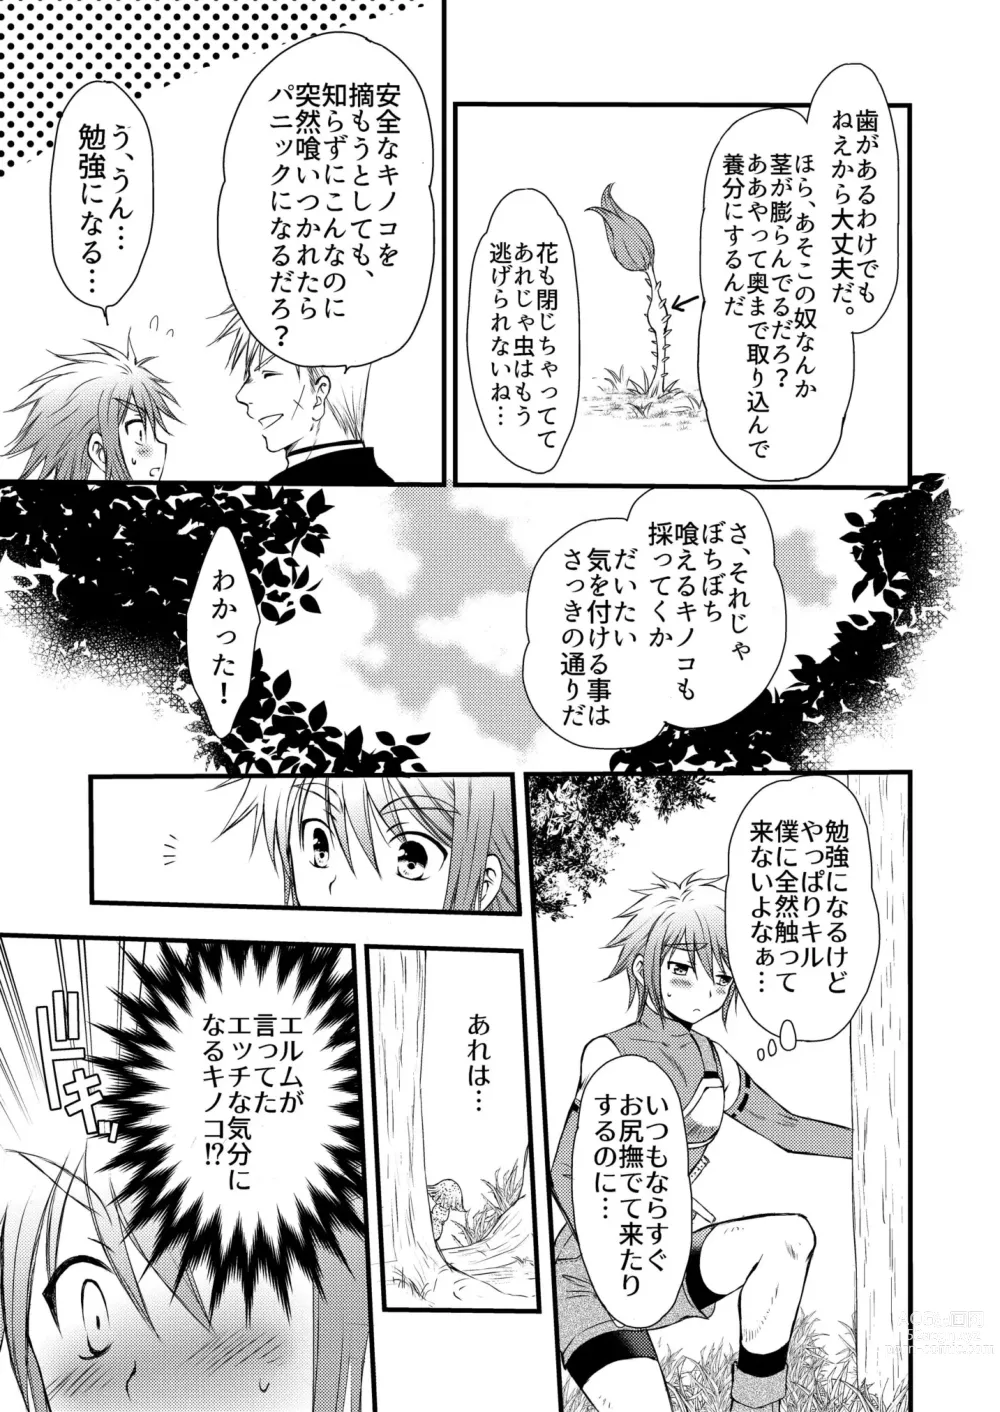 Page 11 of doujinshi Osukina Kare to Hajimete no Kinoko Kari